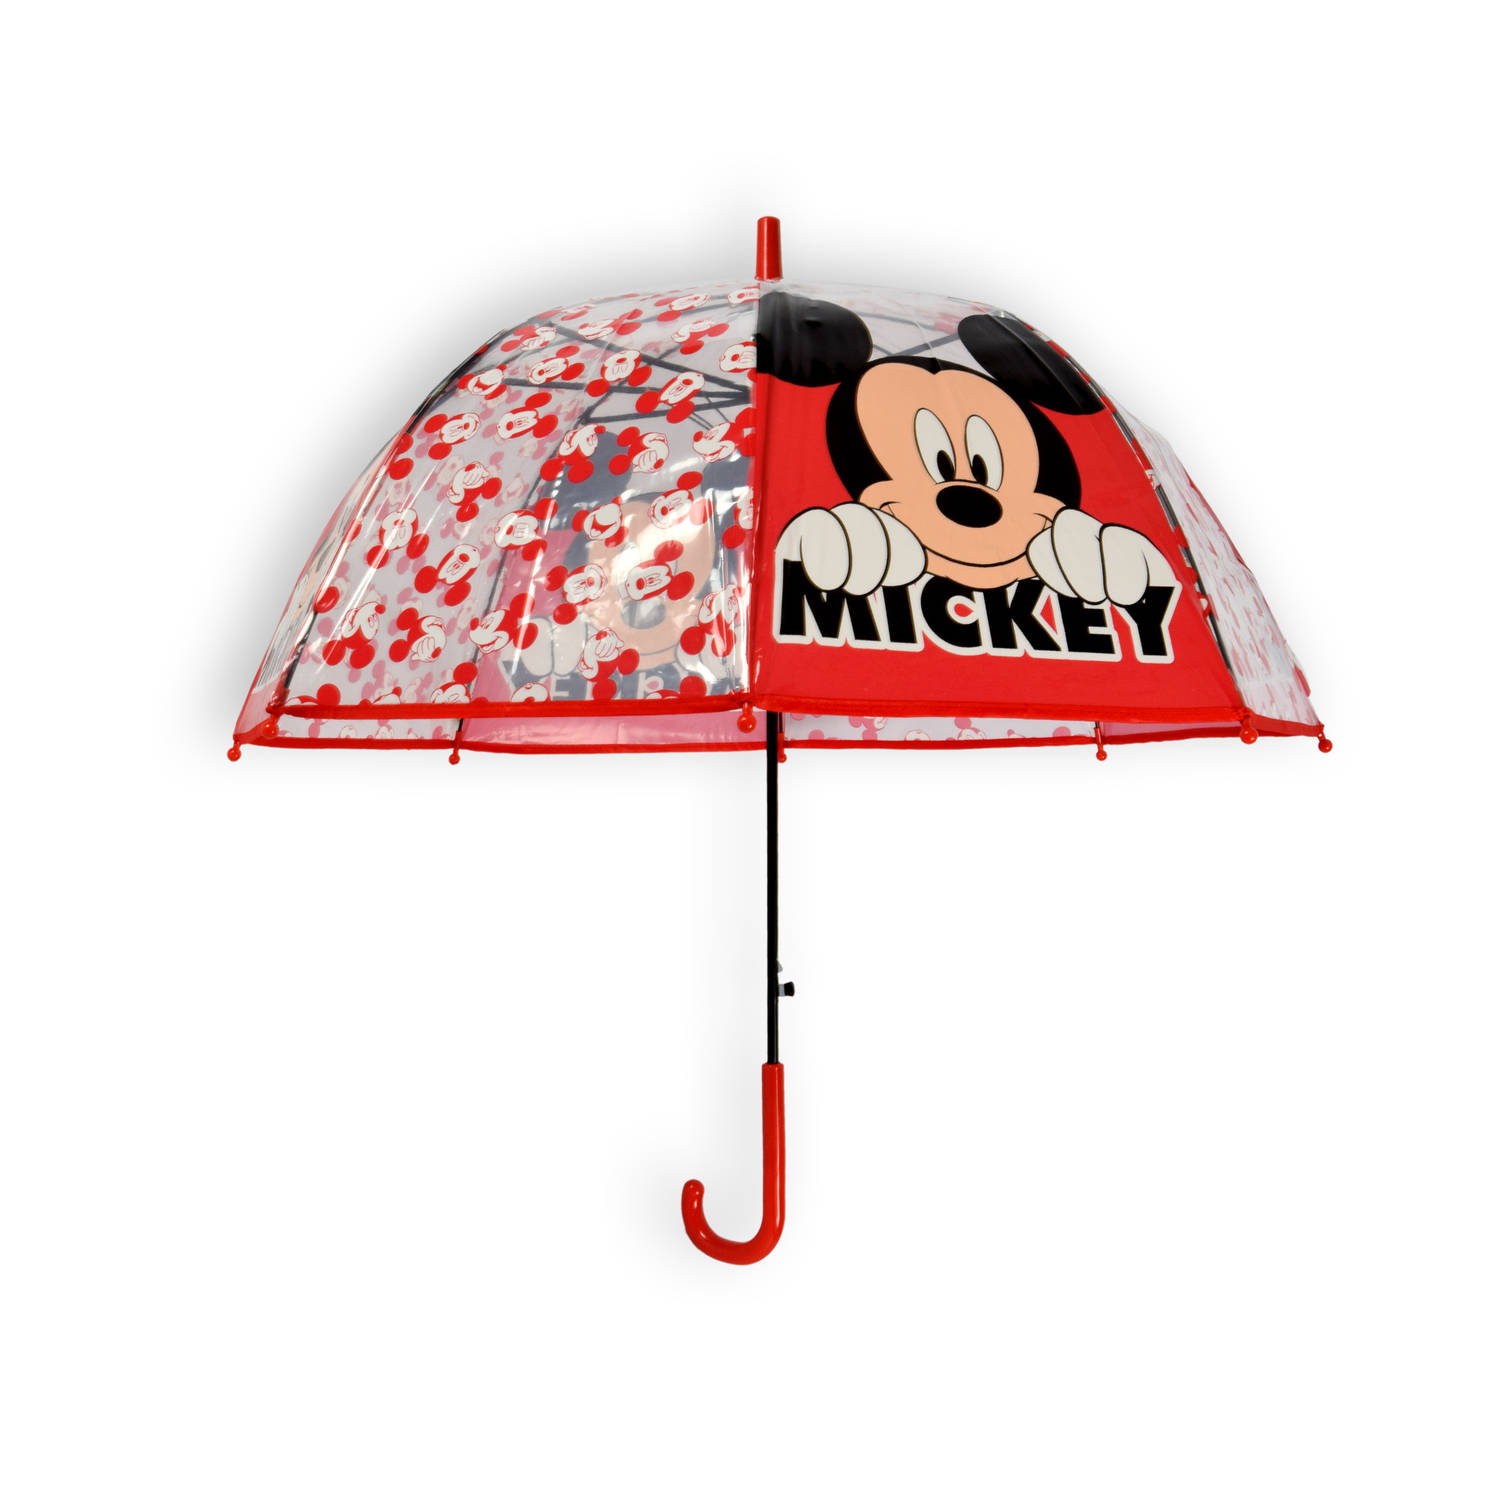 Disney Mickey Mouse Automatische Kinderparaplu - 65cm Diameter - Veilig & Vrolijk Ontwerp - Perfect voor Jonge Disney Fans - Duurzaam & Gebruiksvriendelijk